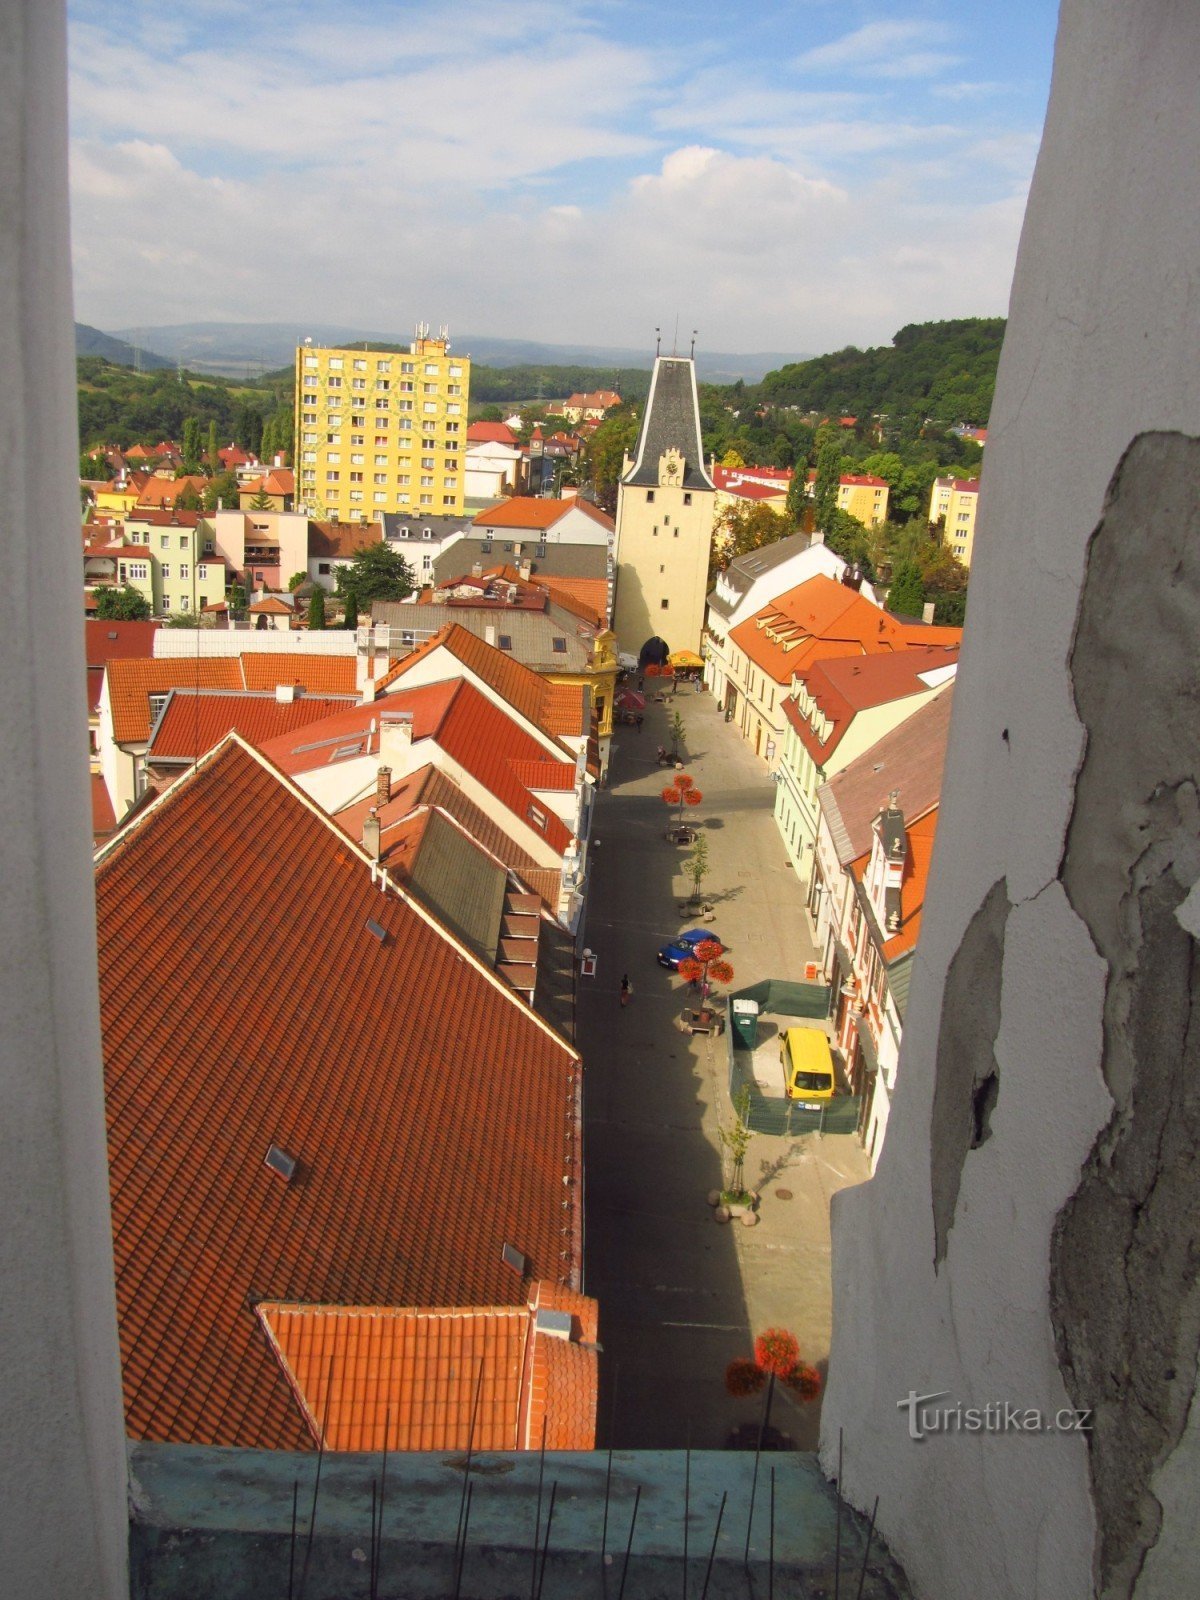 カダニのミクロフ門 - 市庁舎塔からの眺め